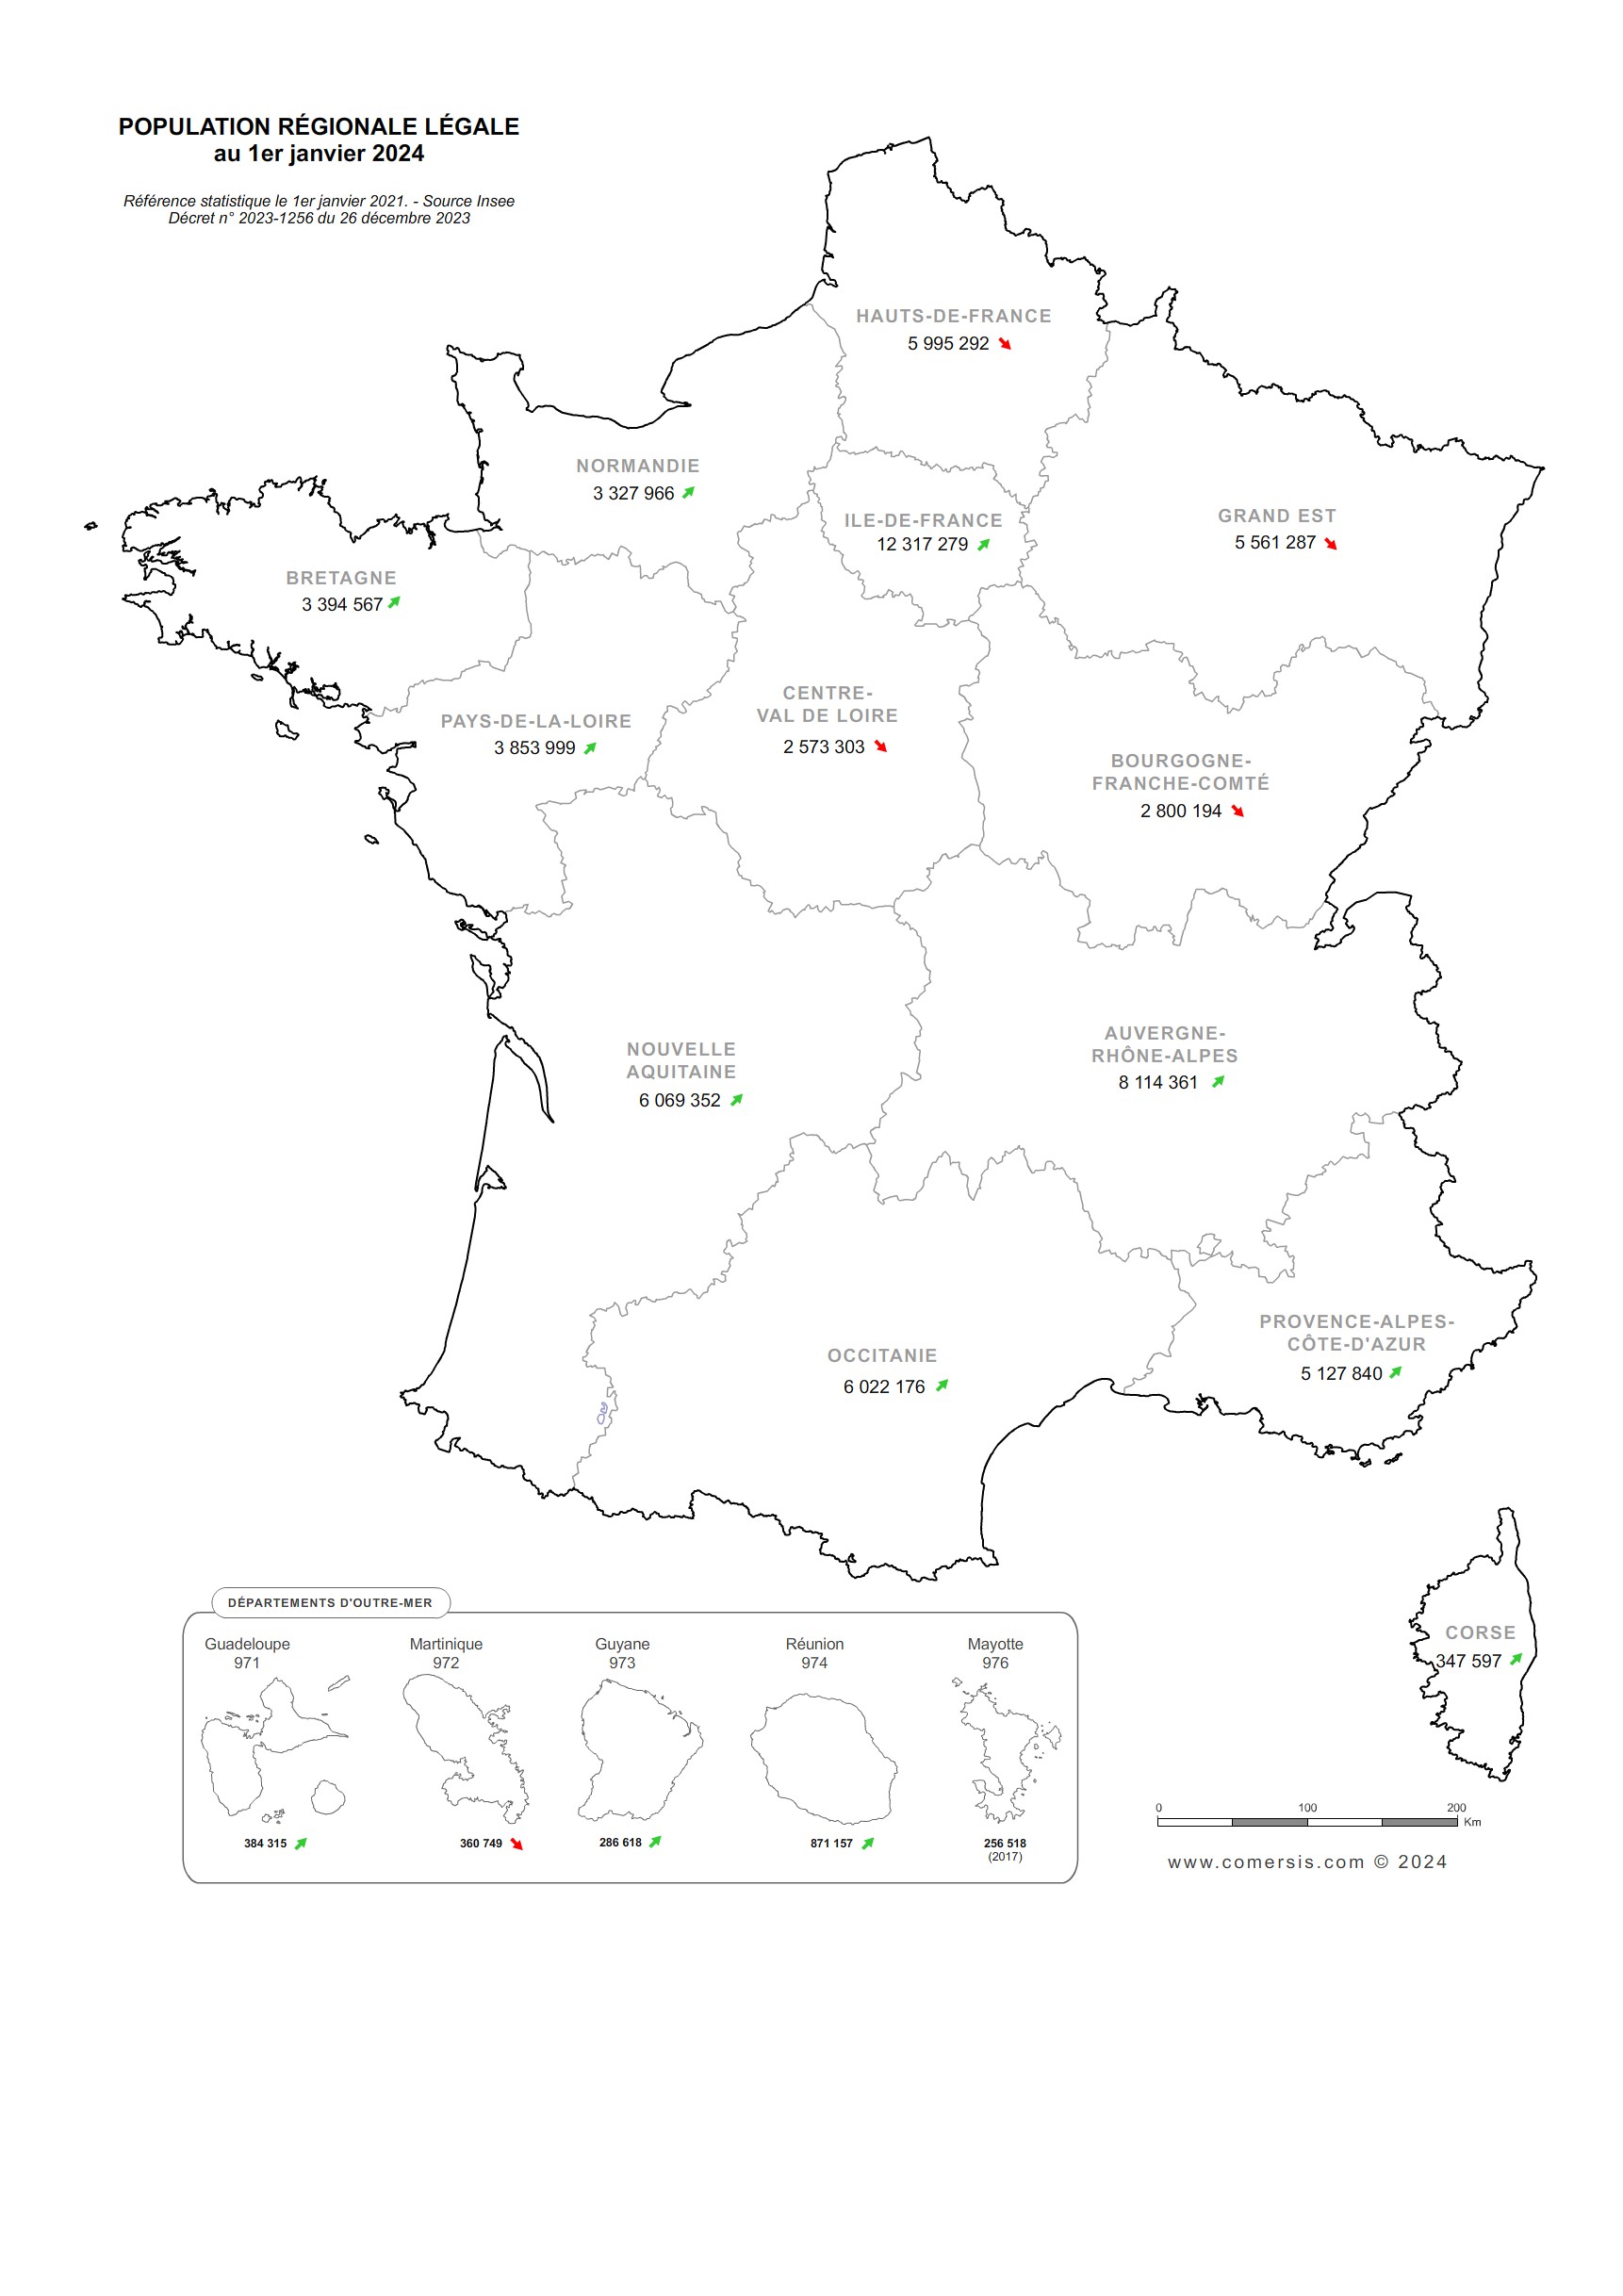 Carte de la population régionale de France 2024